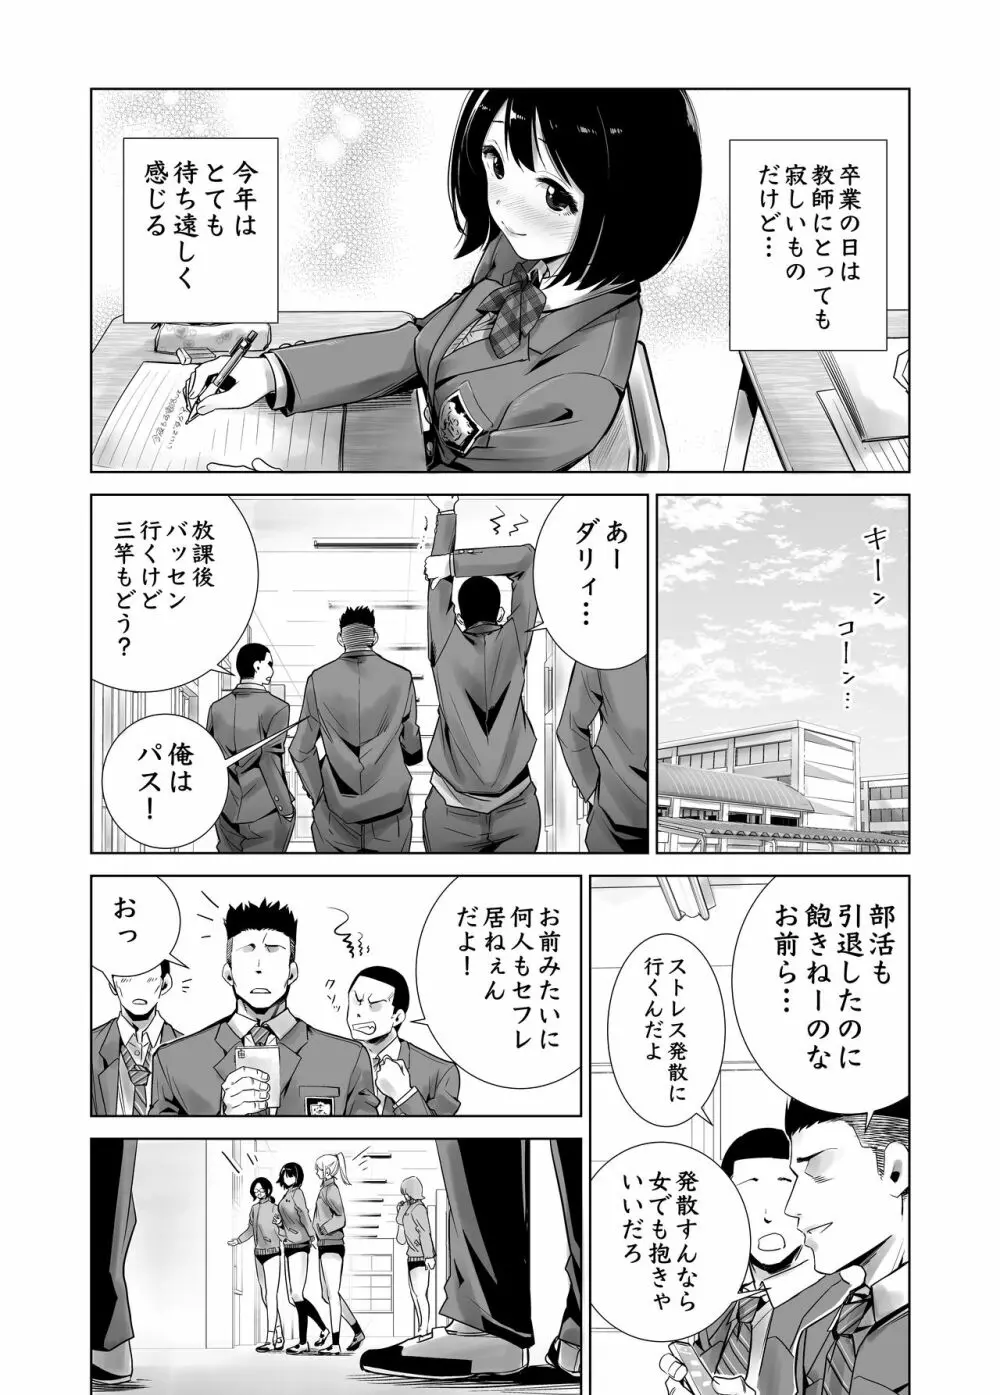 冬ノケダモノ総集篇1+2+ 7ページ